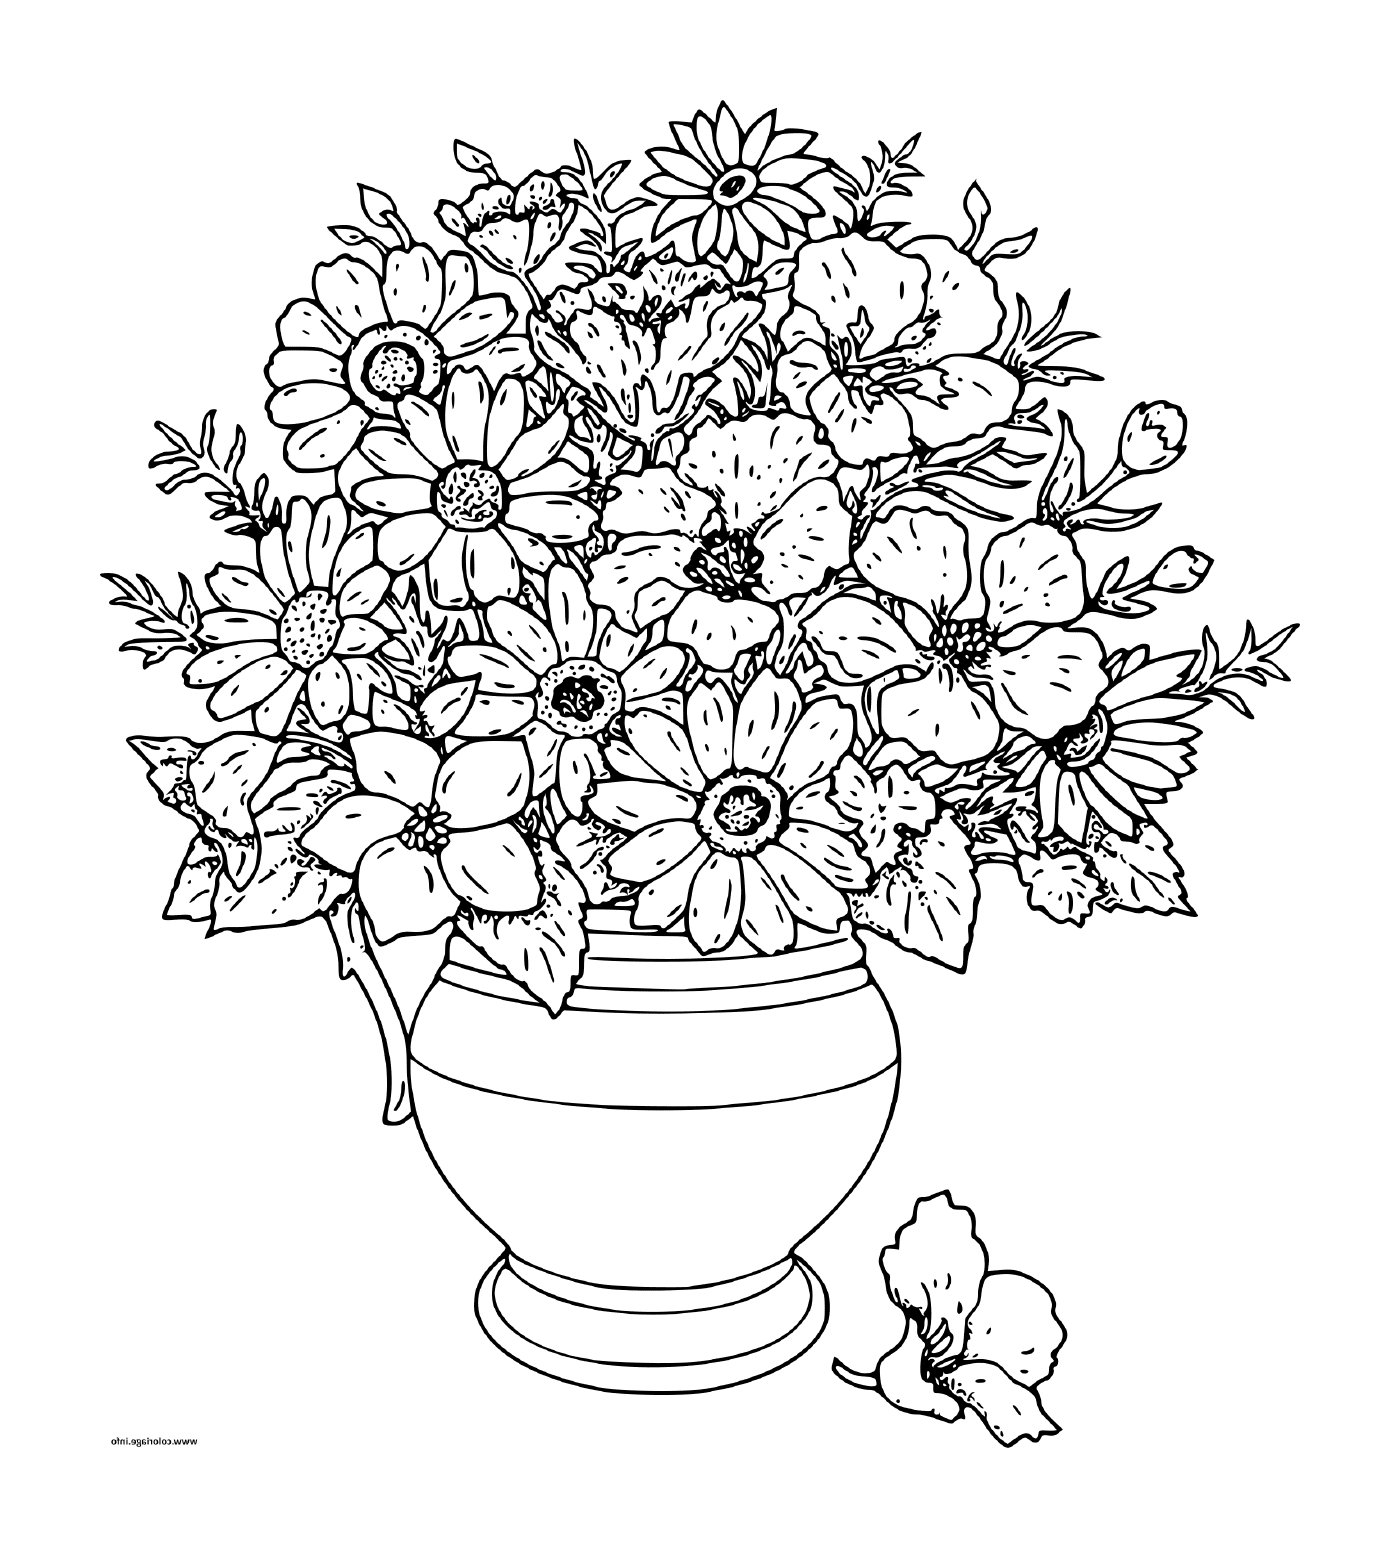   Un bouquet de fleurs dans un vase 